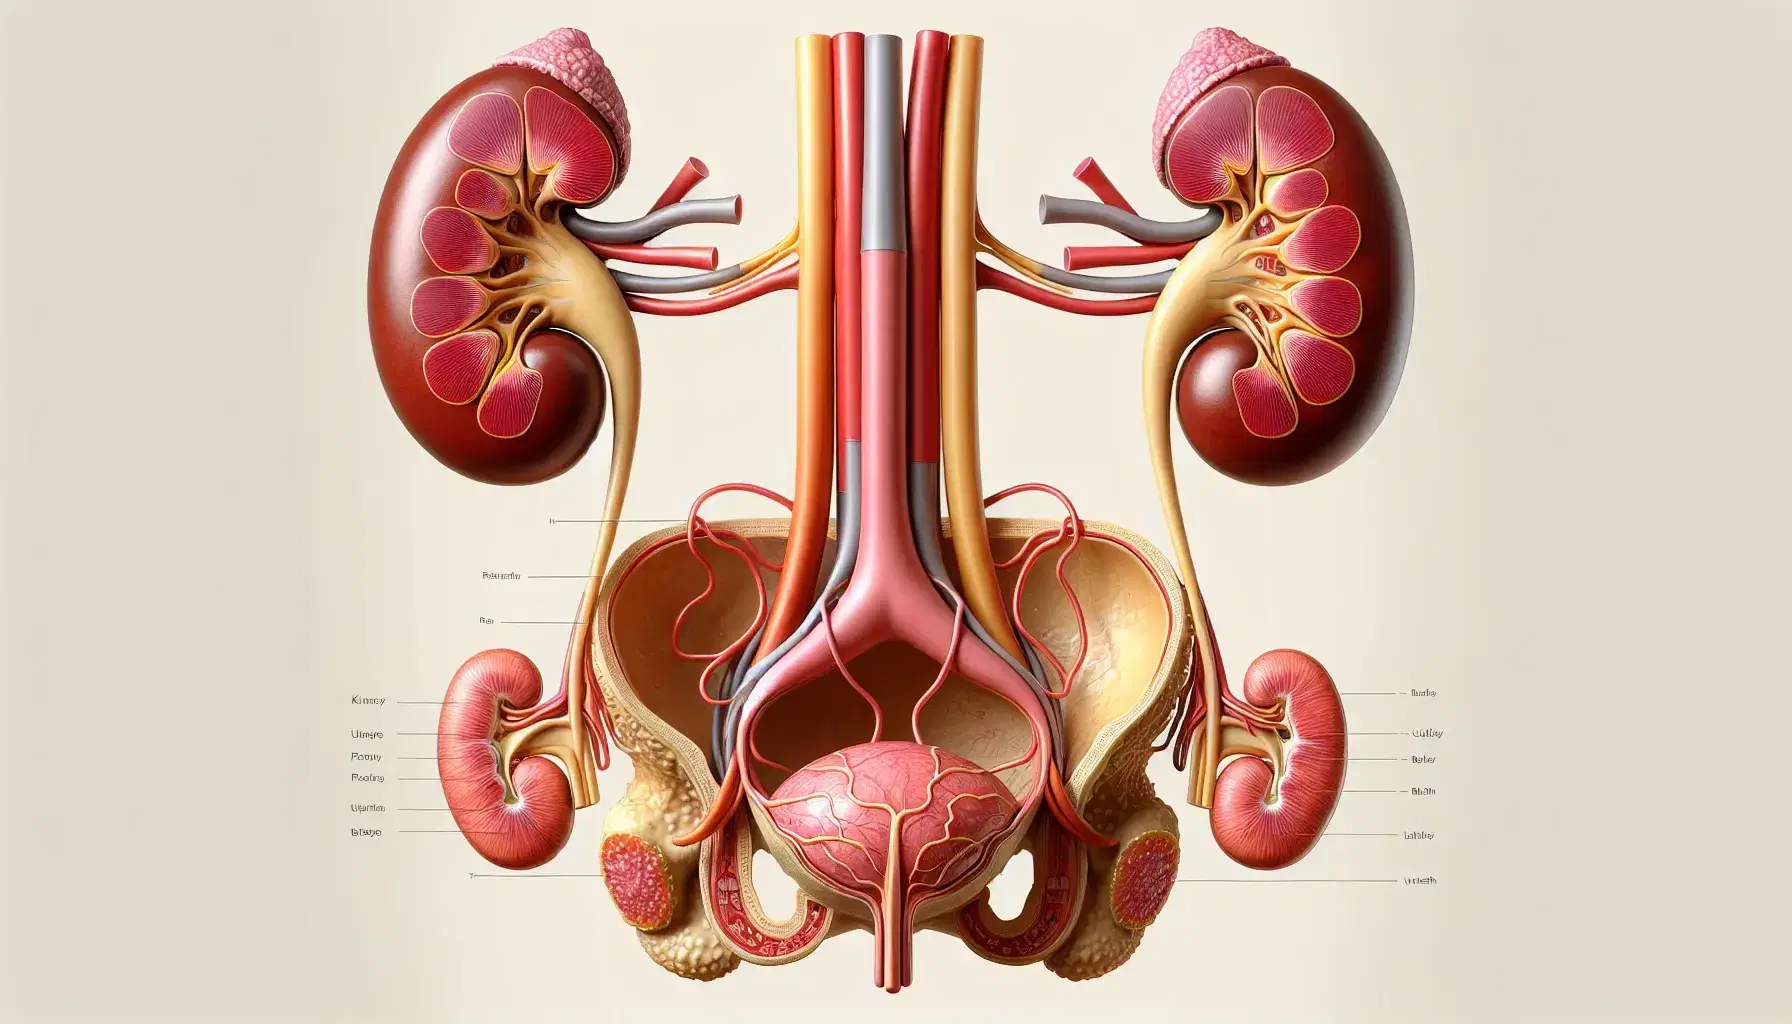 Representación anatómica detallada del sistema urinario humano con riñones, ureteres, vejiga urinaria, uretra y próstata en un fondo neutro.